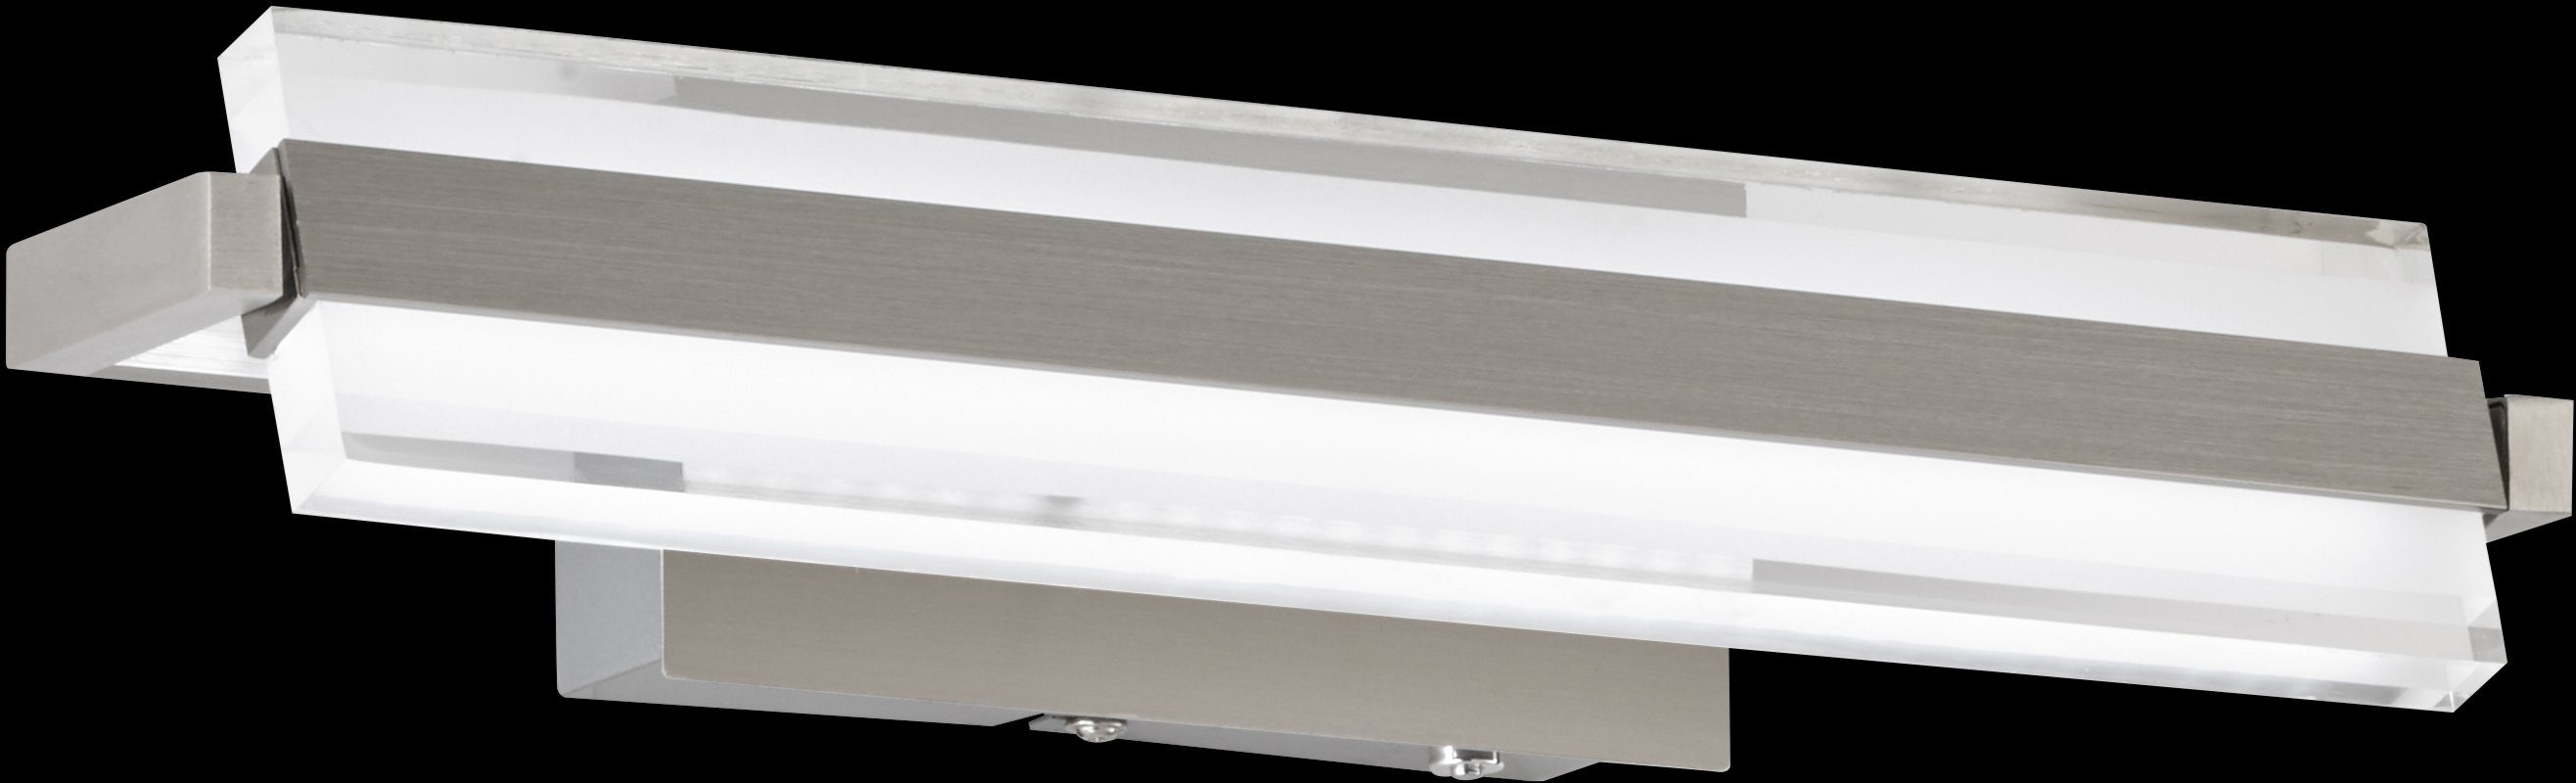 FISCHER & HONSEL LED LED Technologie Tunable Warmweiß, integriert, von fest White Neutralweiß, Dimmfunktion, Paros, 2700/3350/4000K Farbtemperaturen Wandleuchte